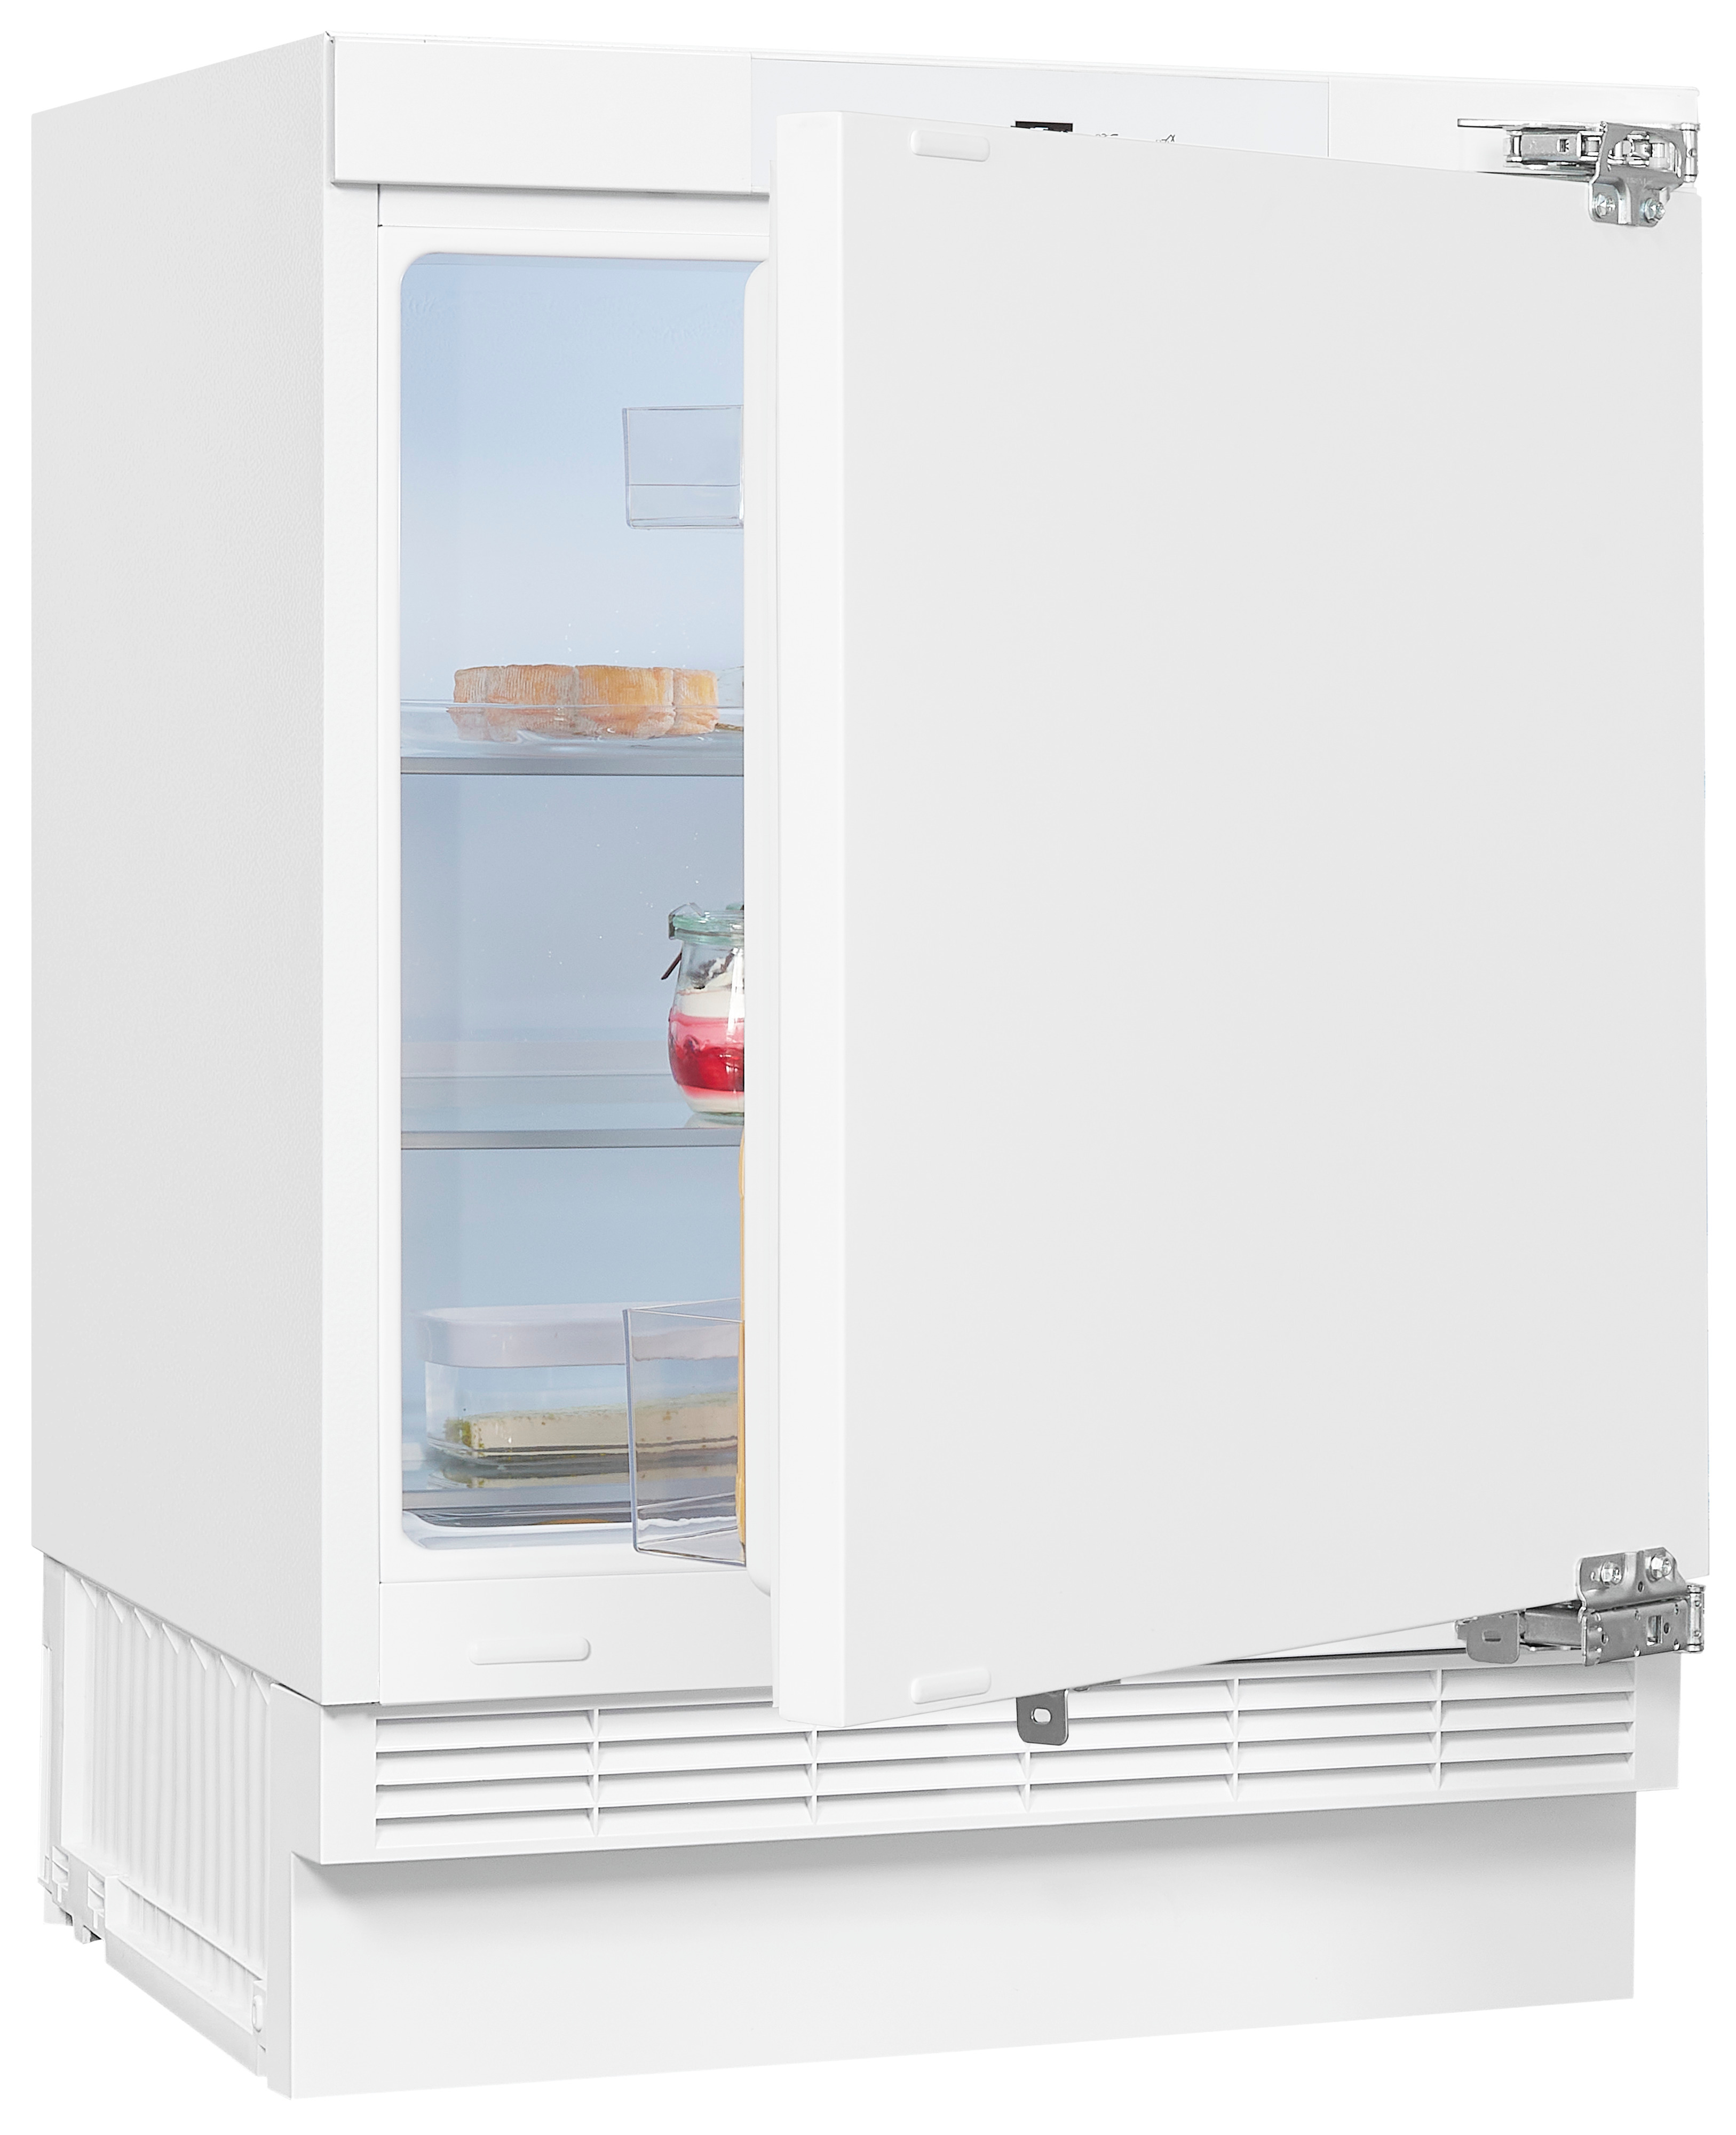 (D, mm Unterbau-Kühlschränke 818 hoch, EXQUISIT Weiß) UKS140-V-FE-010D